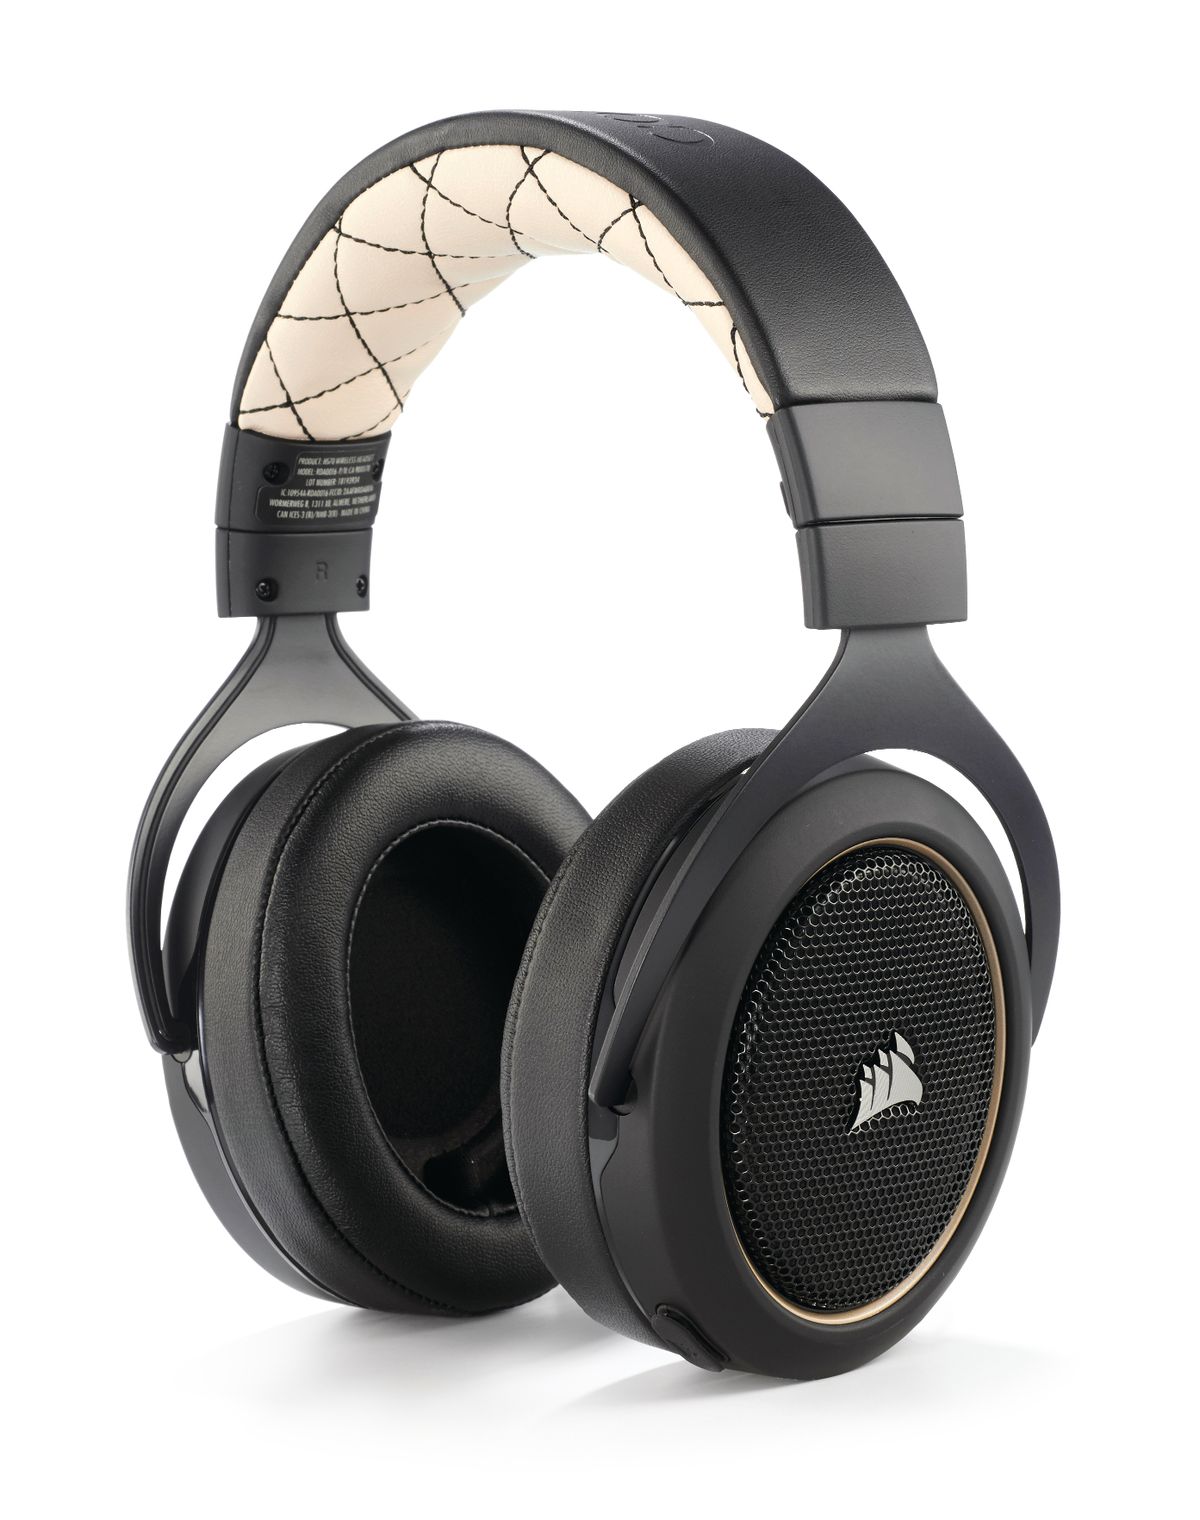 Gelijkwaardig Prelude oven Corsair HS70 SE Wireless headphones review | PC Gamer